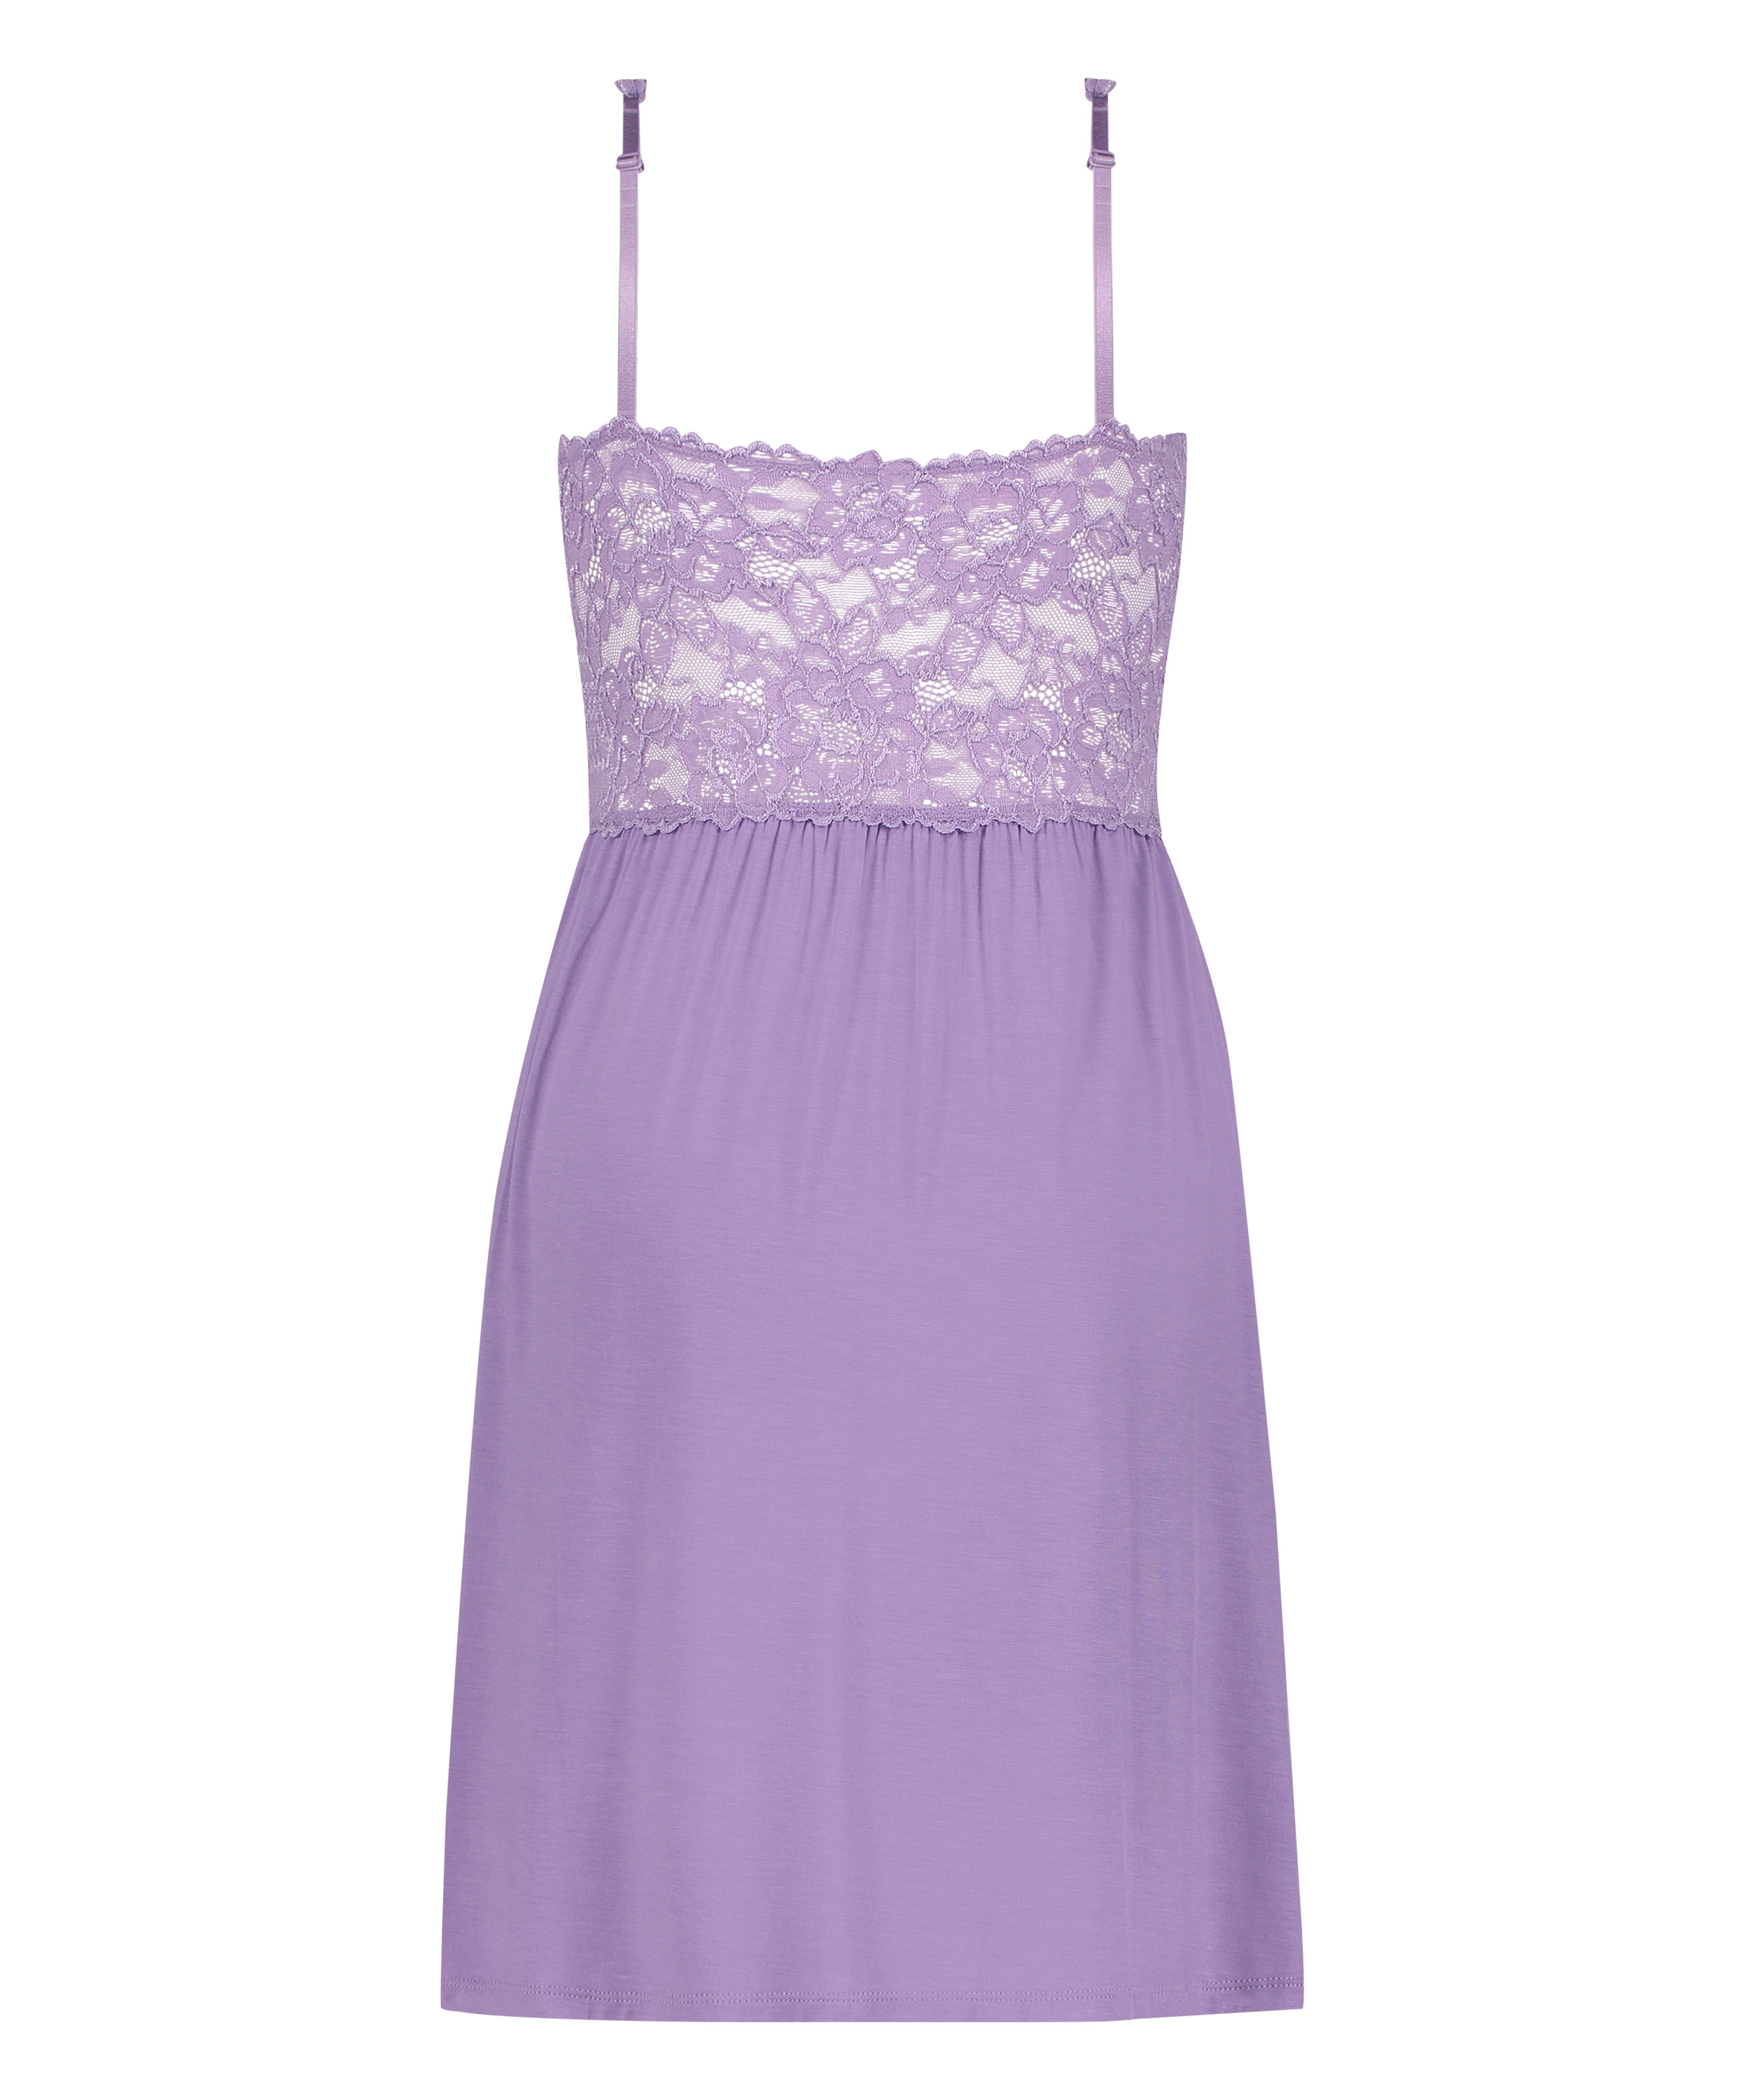 Nora Lace Slip Dress, Purple, main